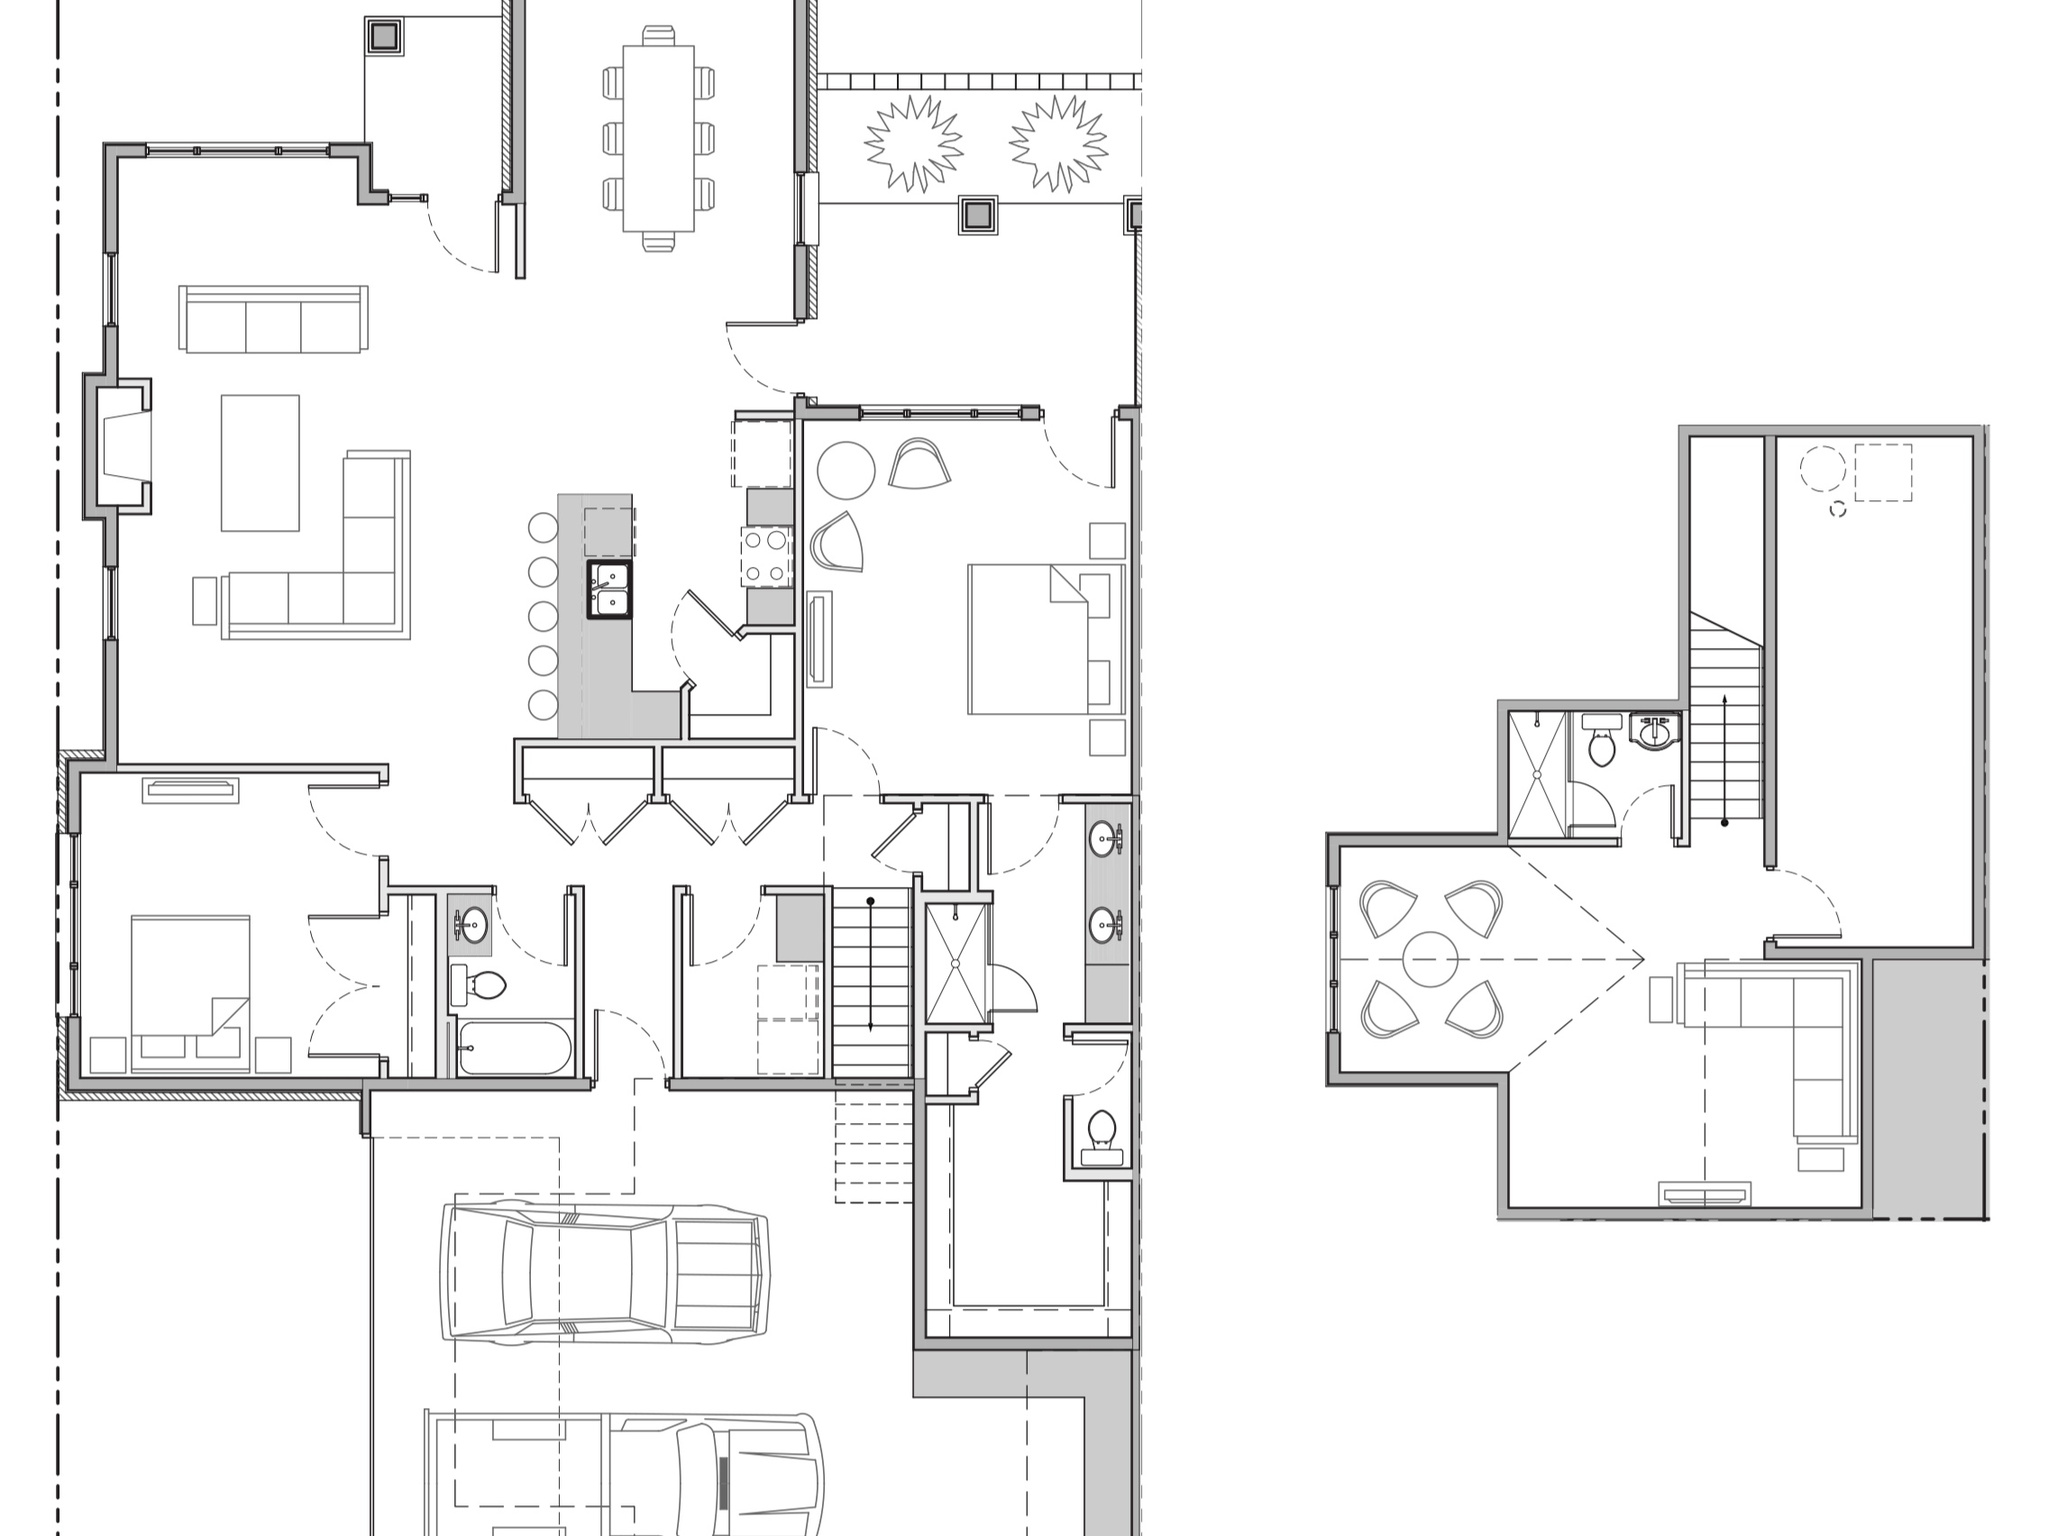 Floor plan- Granite 2 bedroom main plus bonus upstairs and full basement plan